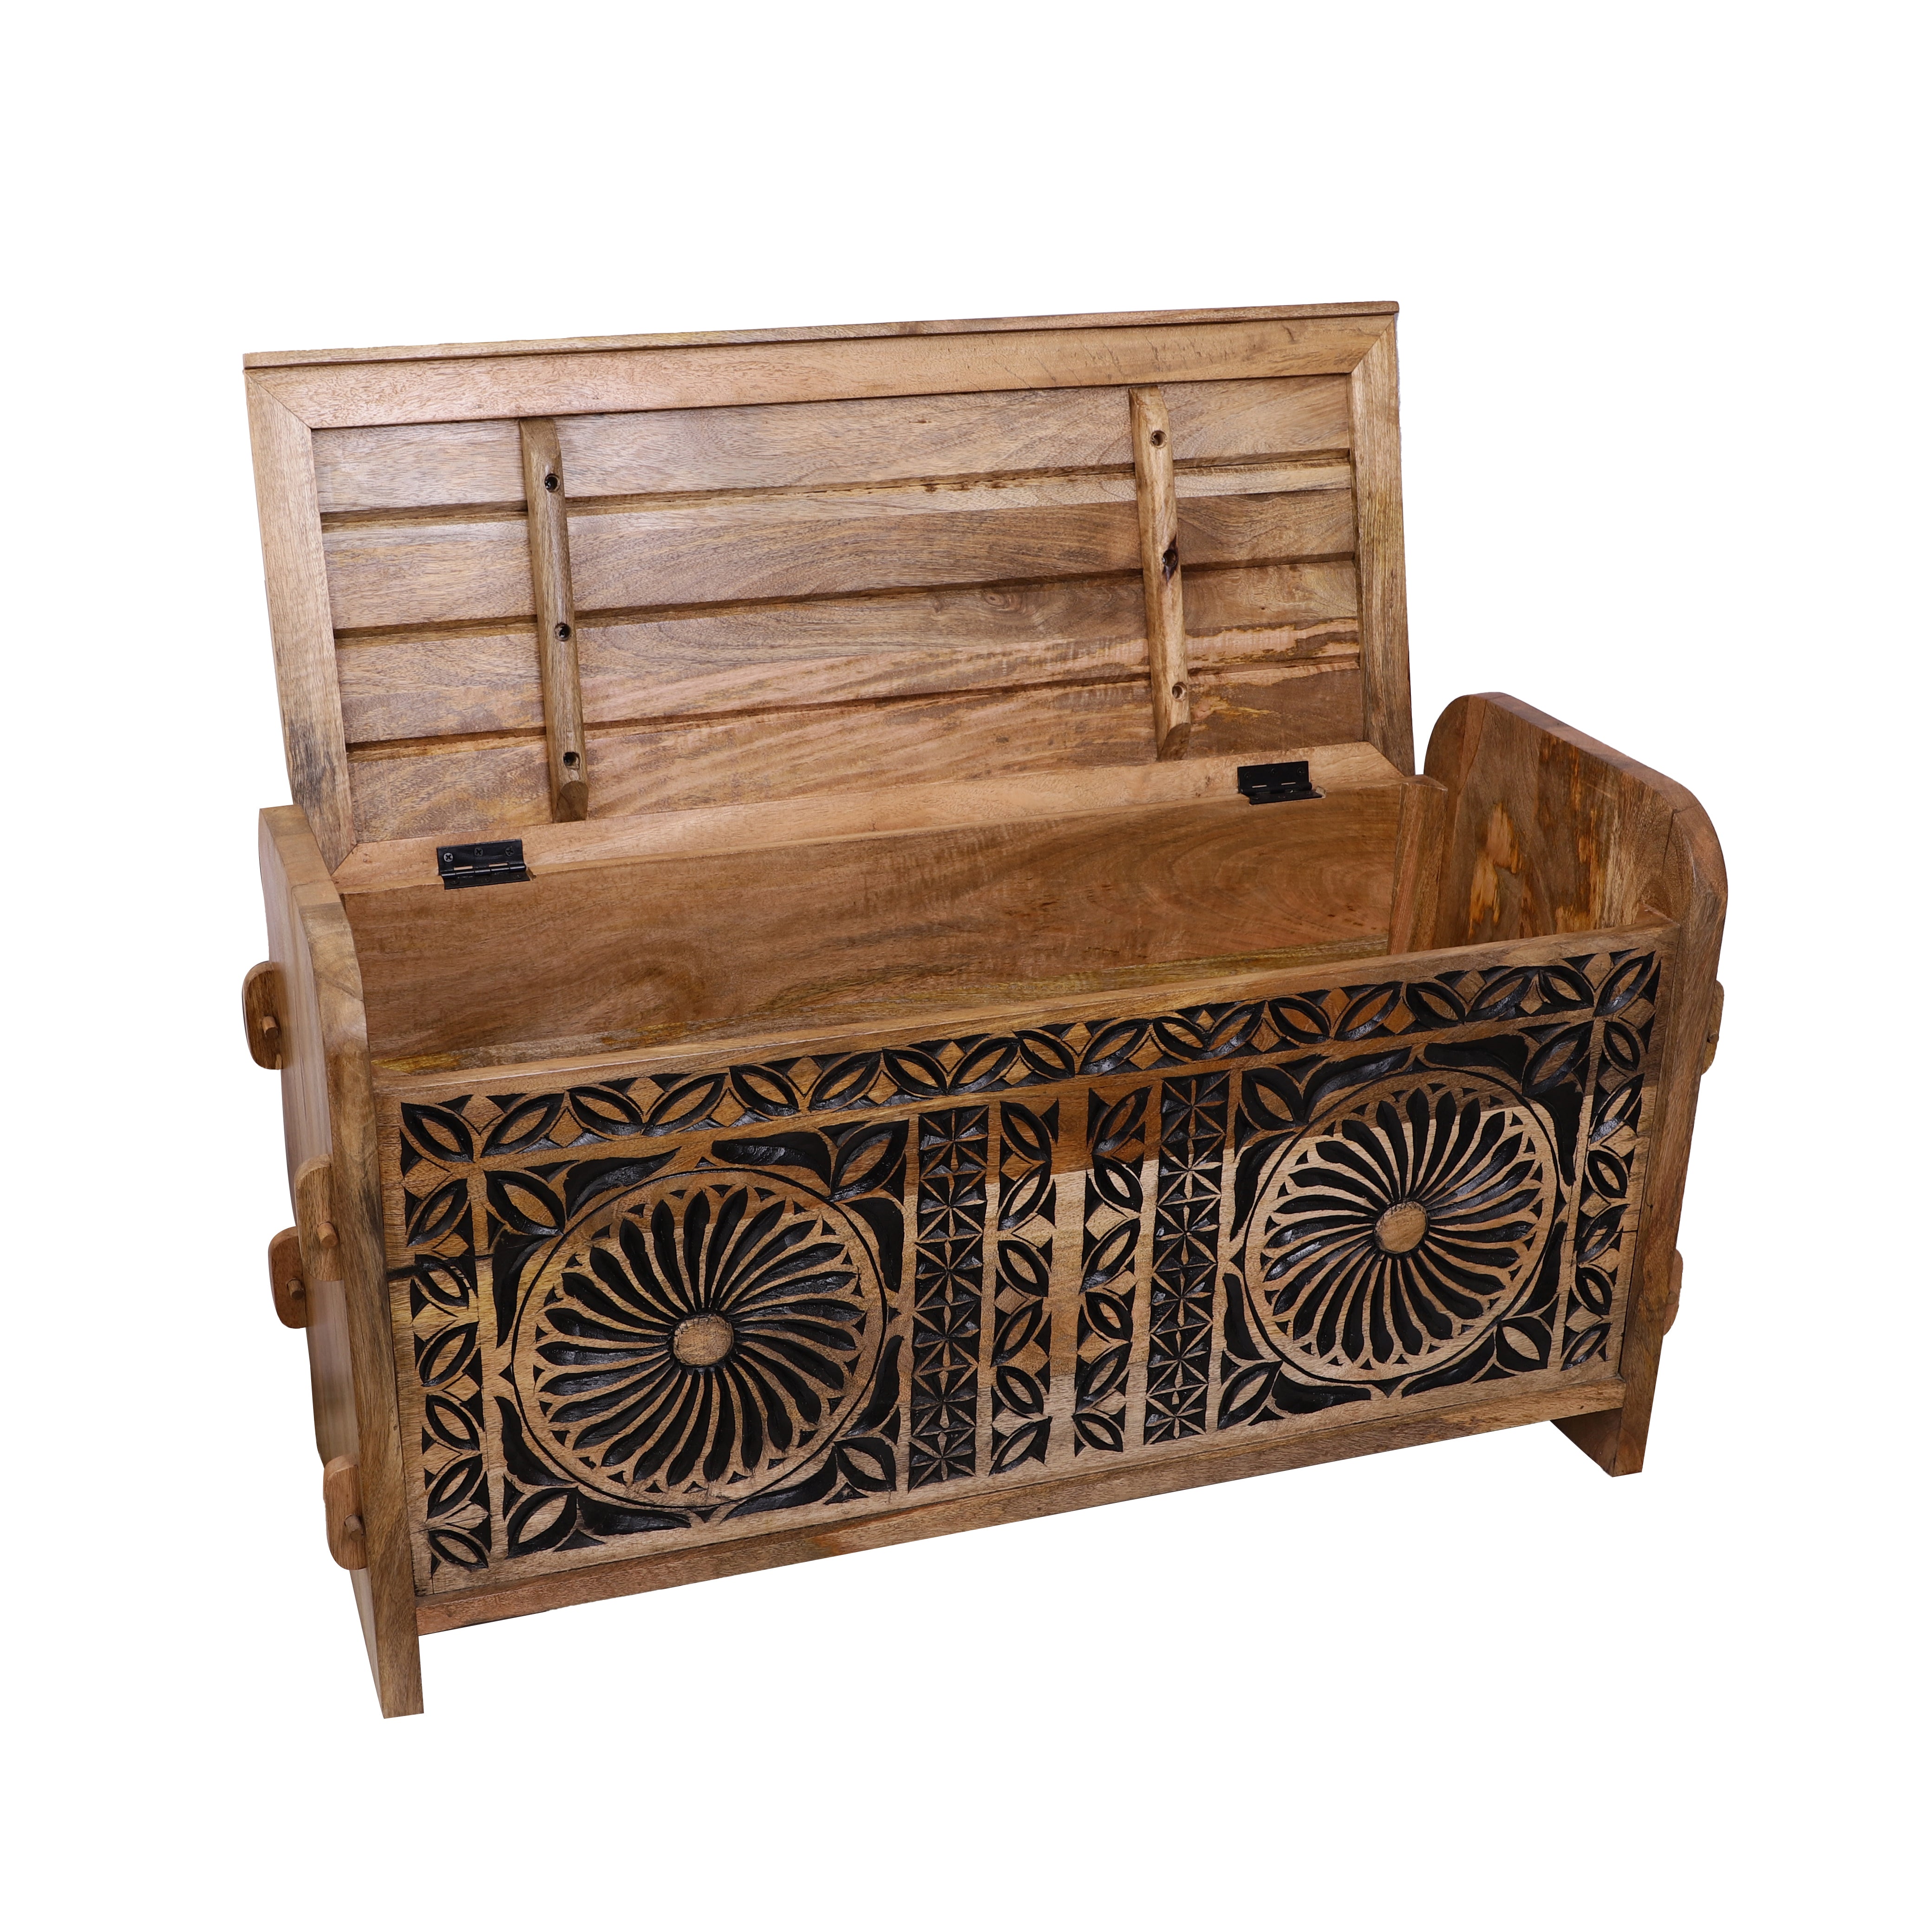 Carved Wooden Storage Box/Bench (Medium)